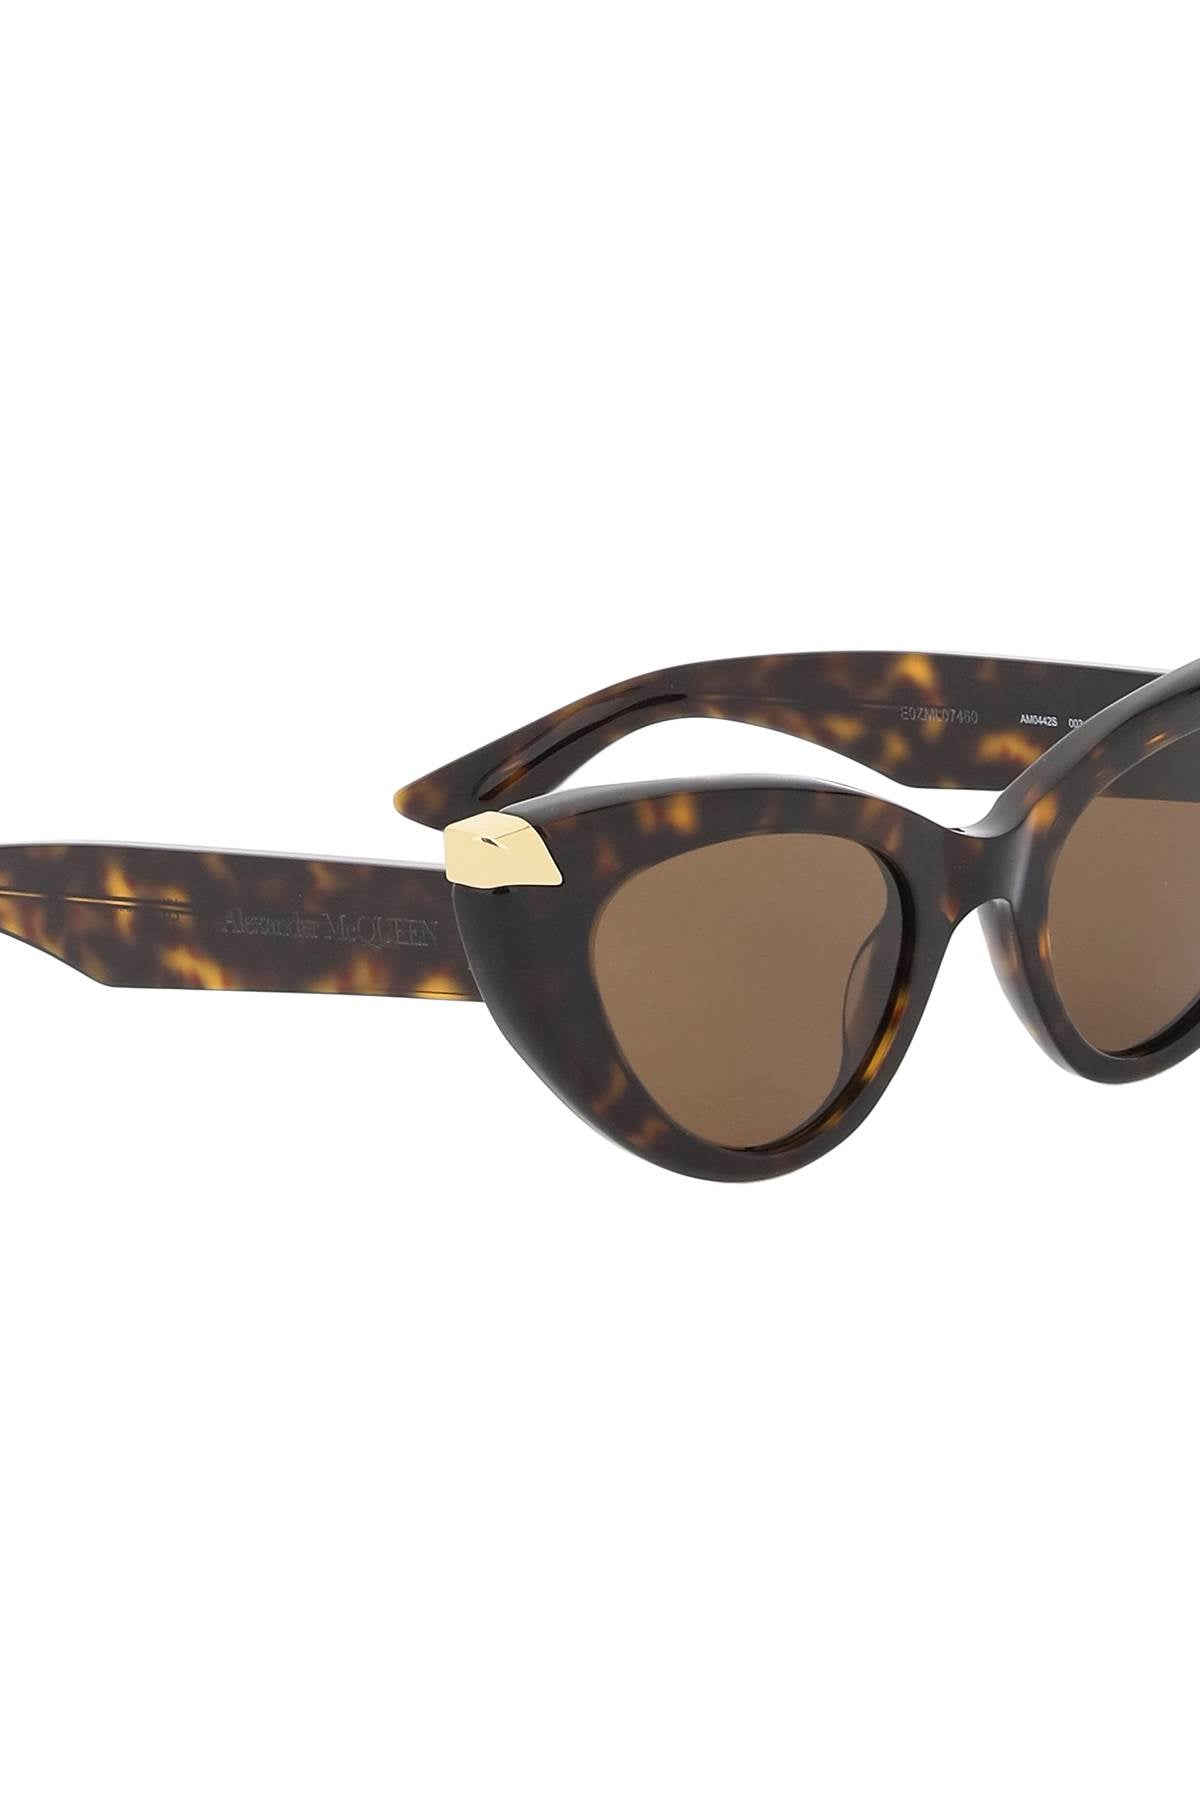 Alexander Mcqueen Alexander mcqueen punk rivet cat-eye sunglasses for